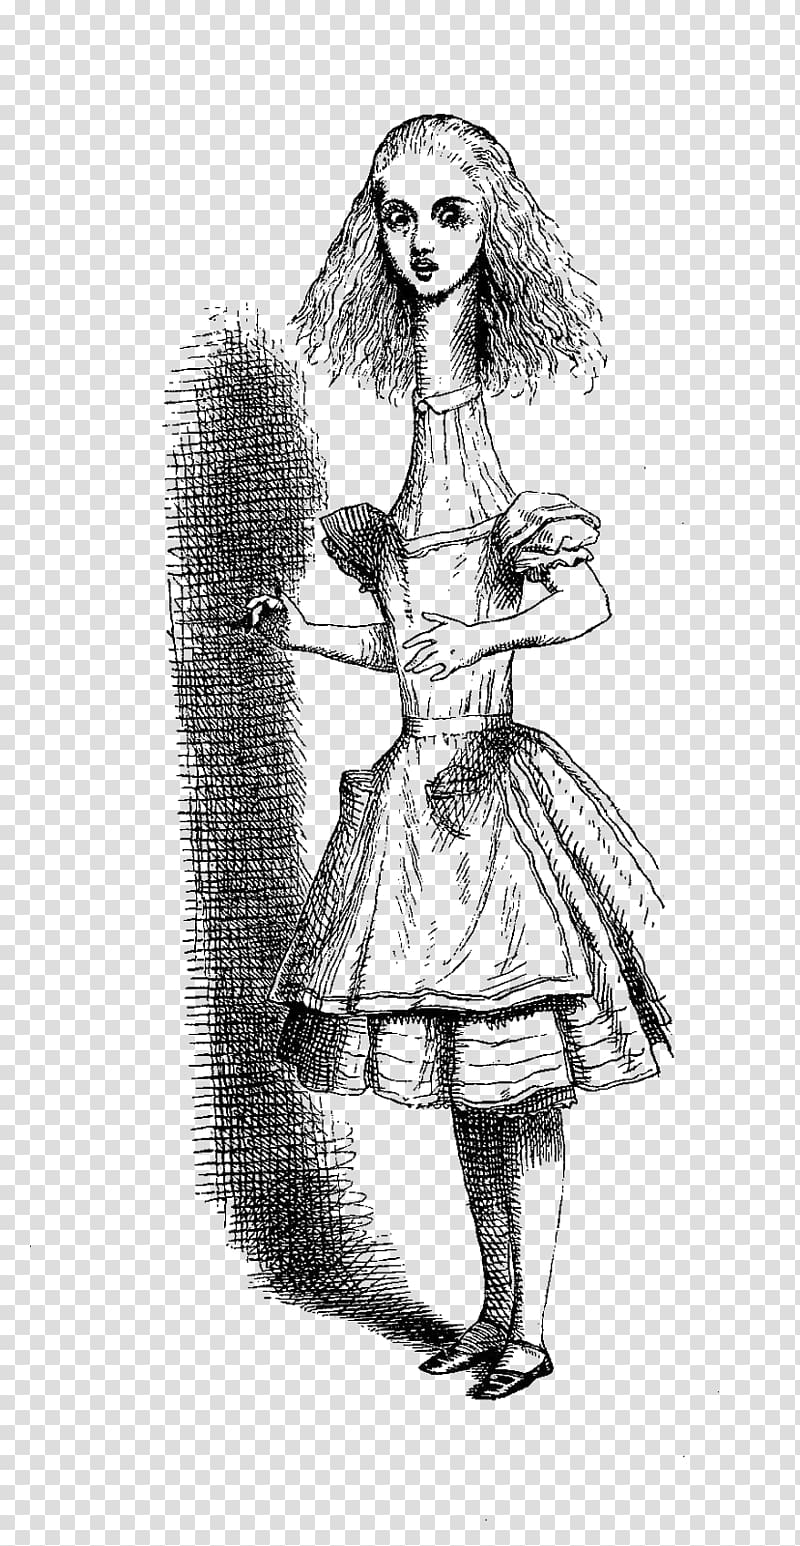 Alice\'s Adventures in Wonderland John Tenniel Aliciae per speculum transitus Cheshire Cat, alice in wonderland transparent background PNG clipart